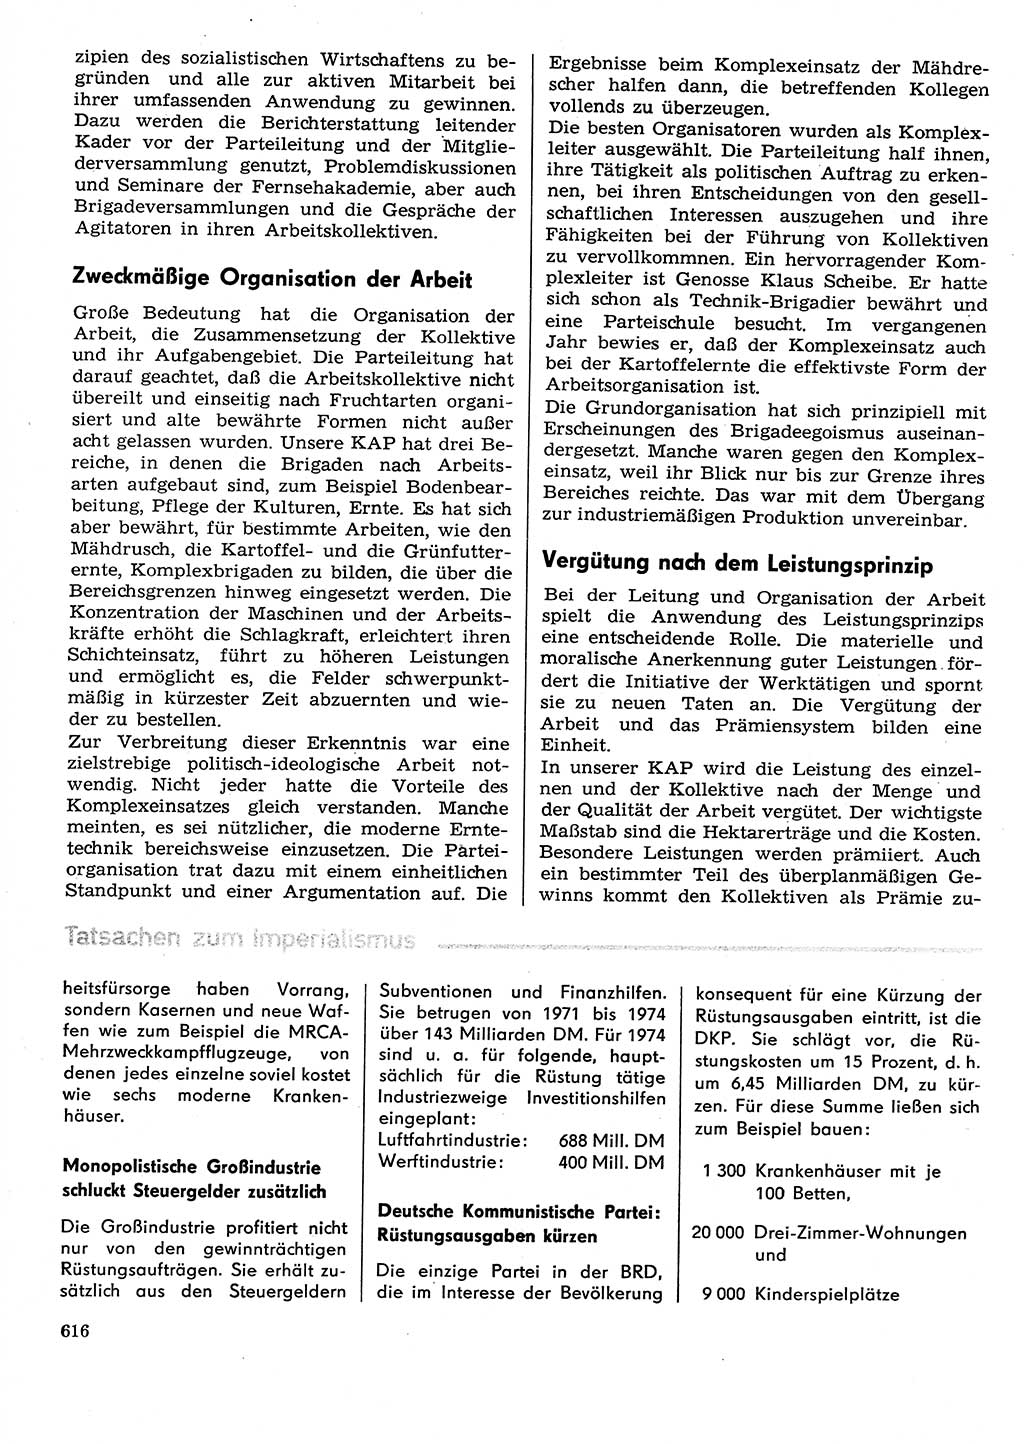 Neuer Weg (NW), Organ des Zentralkomitees (ZK) der SED (Sozialistische Einheitspartei Deutschlands) für Fragen des Parteilebens, 29. Jahrgang [Deutsche Demokratische Republik (DDR)] 1974, Seite 616 (NW ZK SED DDR 1974, S. 616)